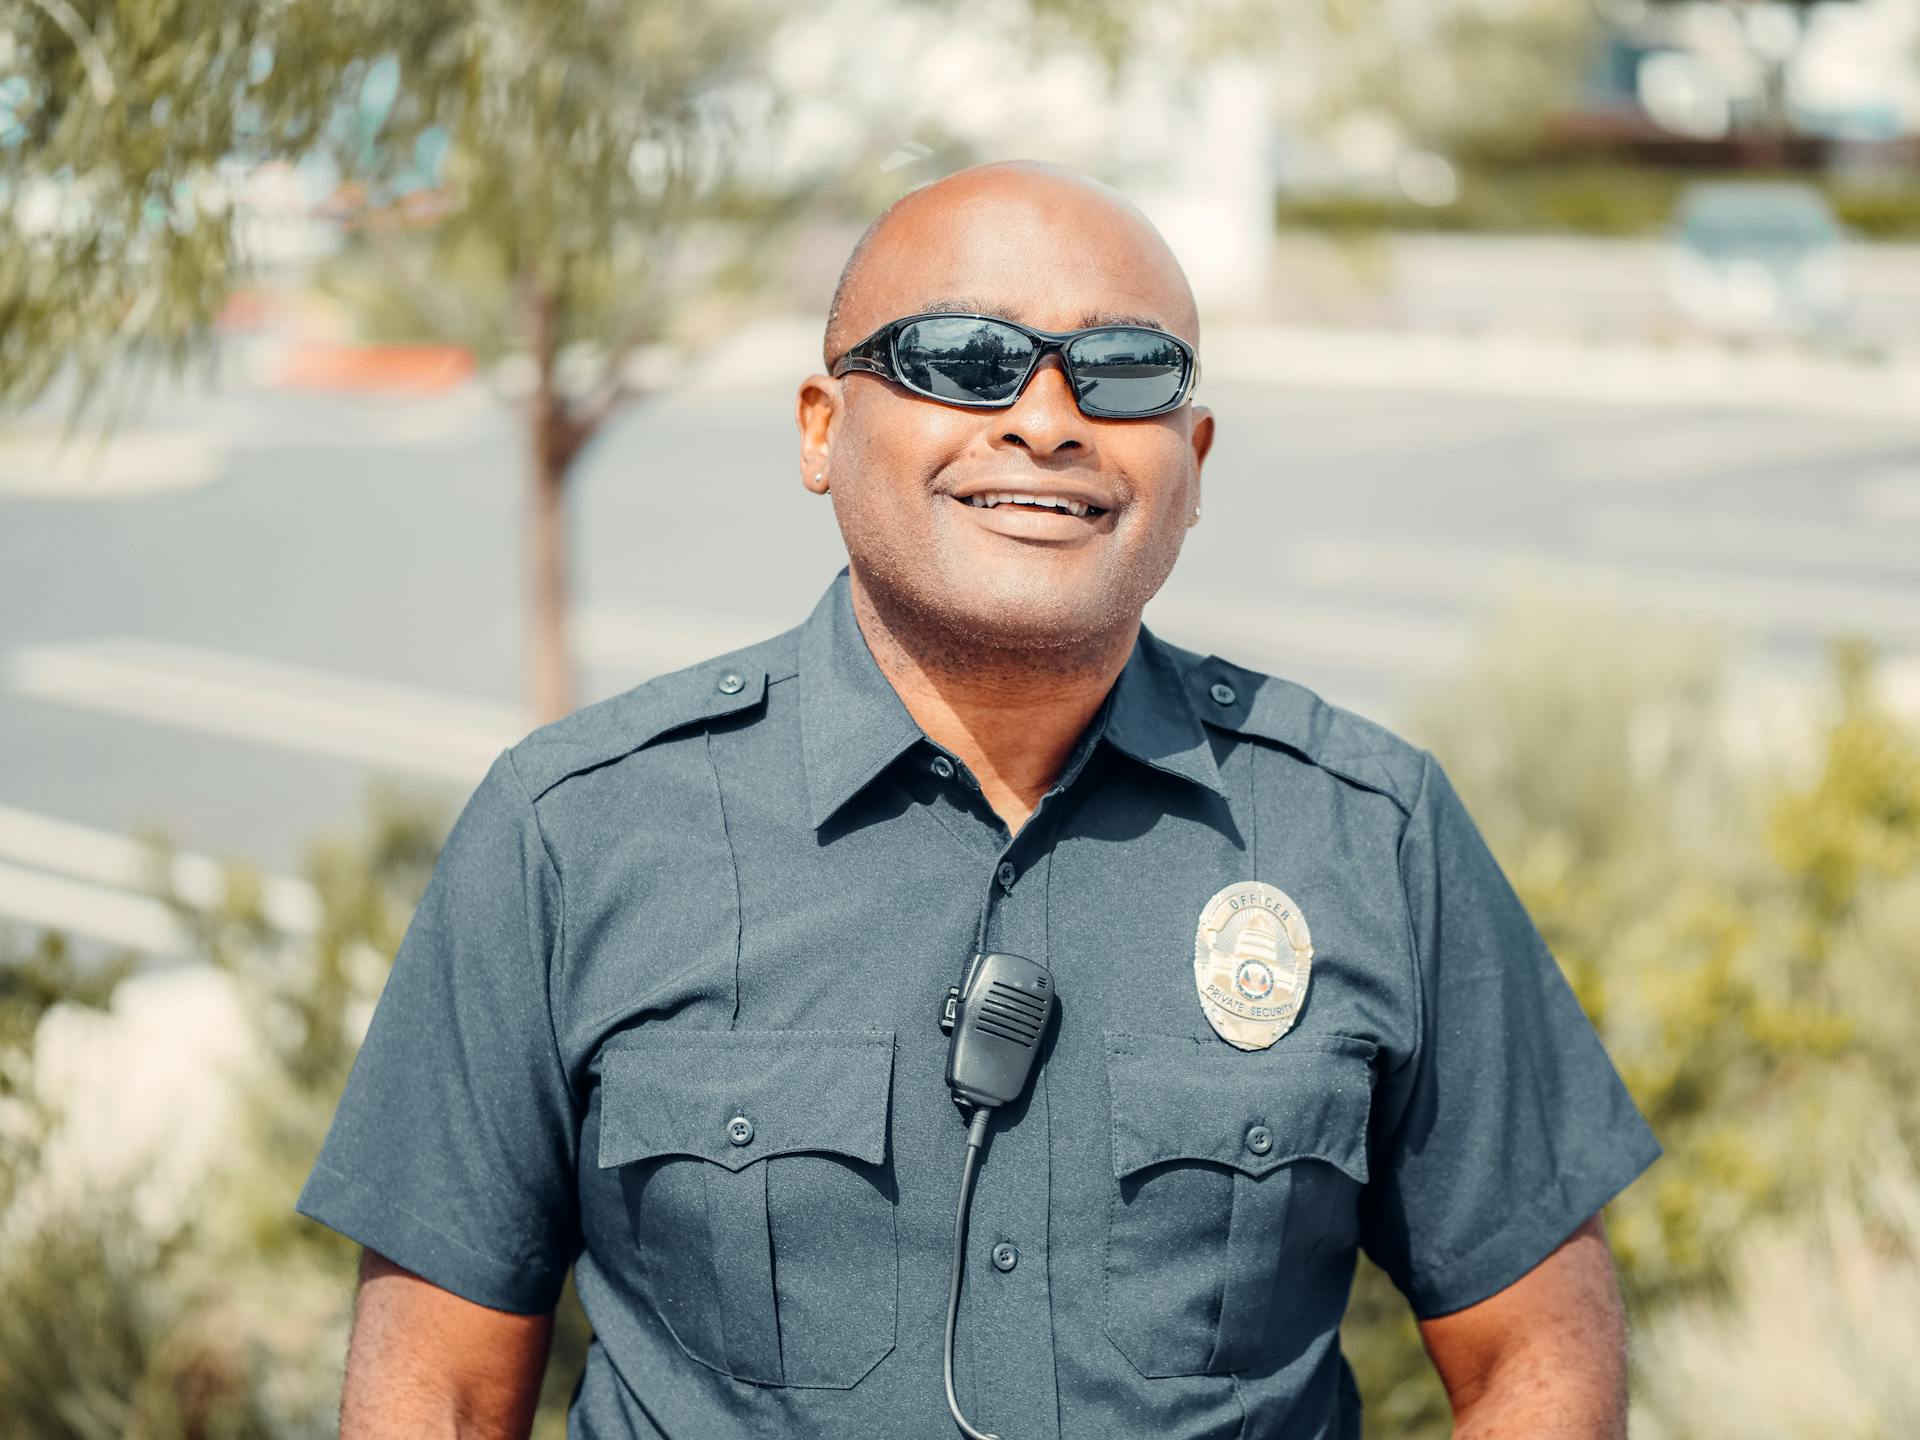 A cop smiling | Source: Pexels